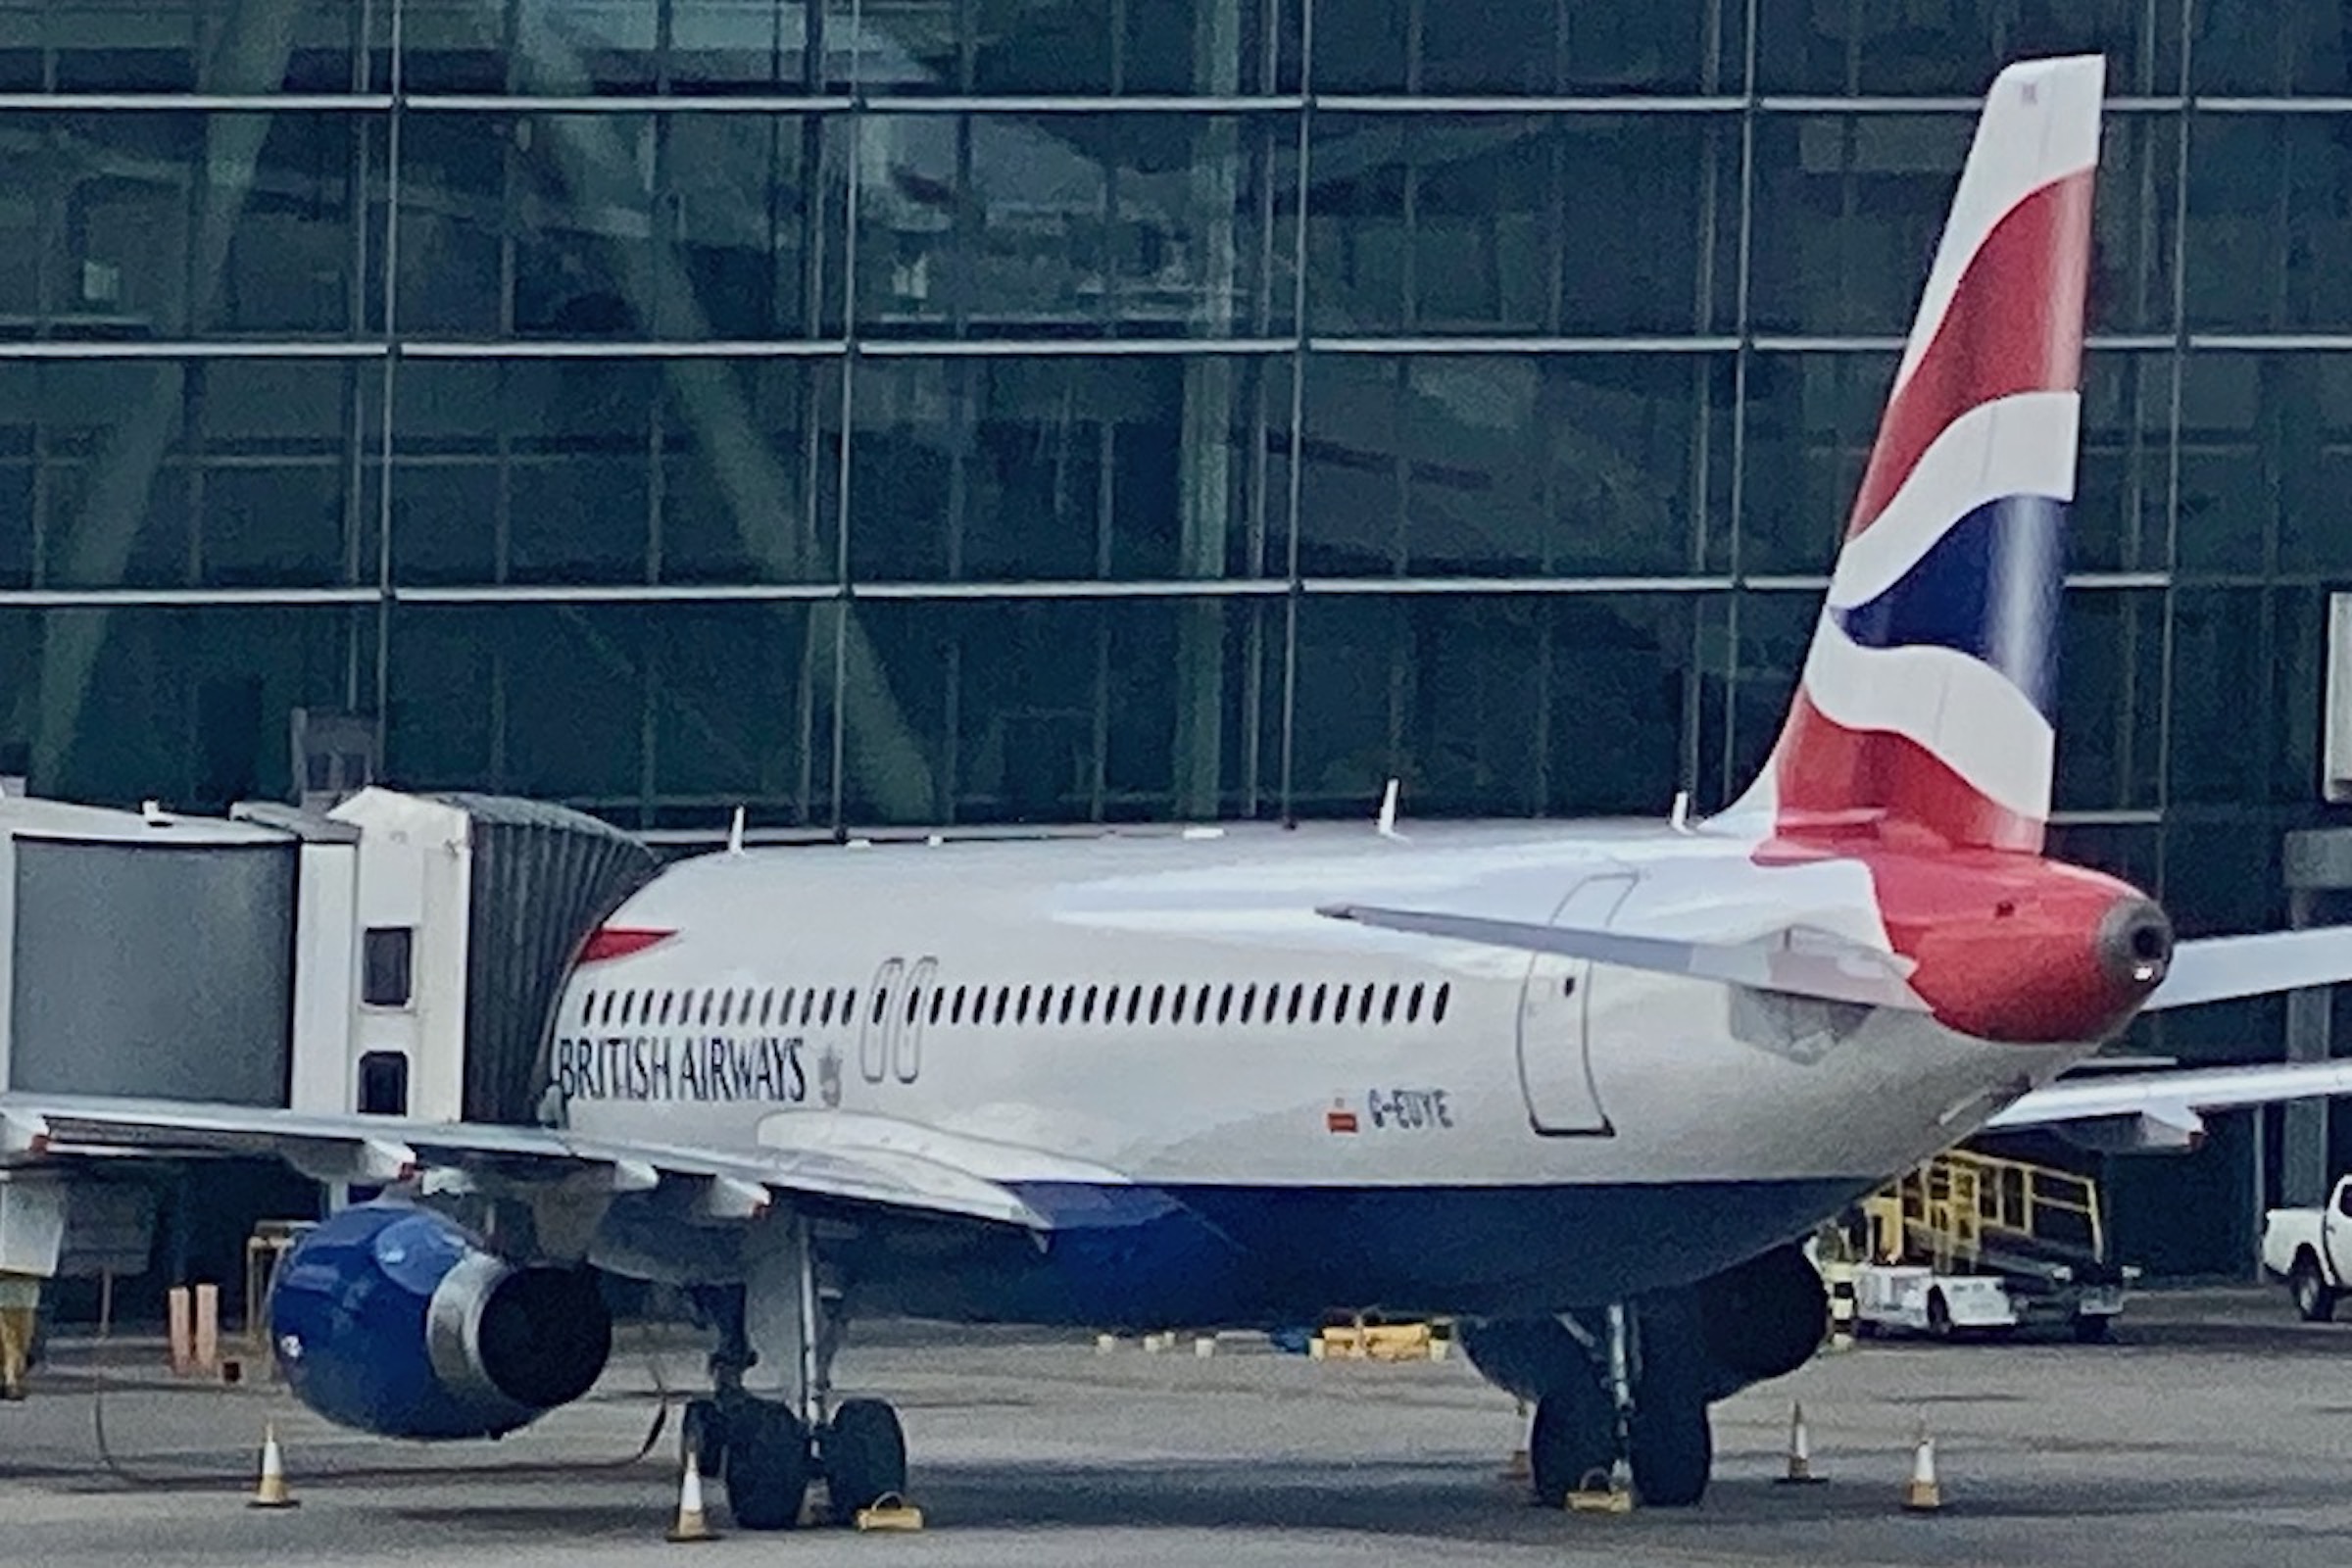 Disembarking BA Flight at Terminal 5, London Heathrow Airport